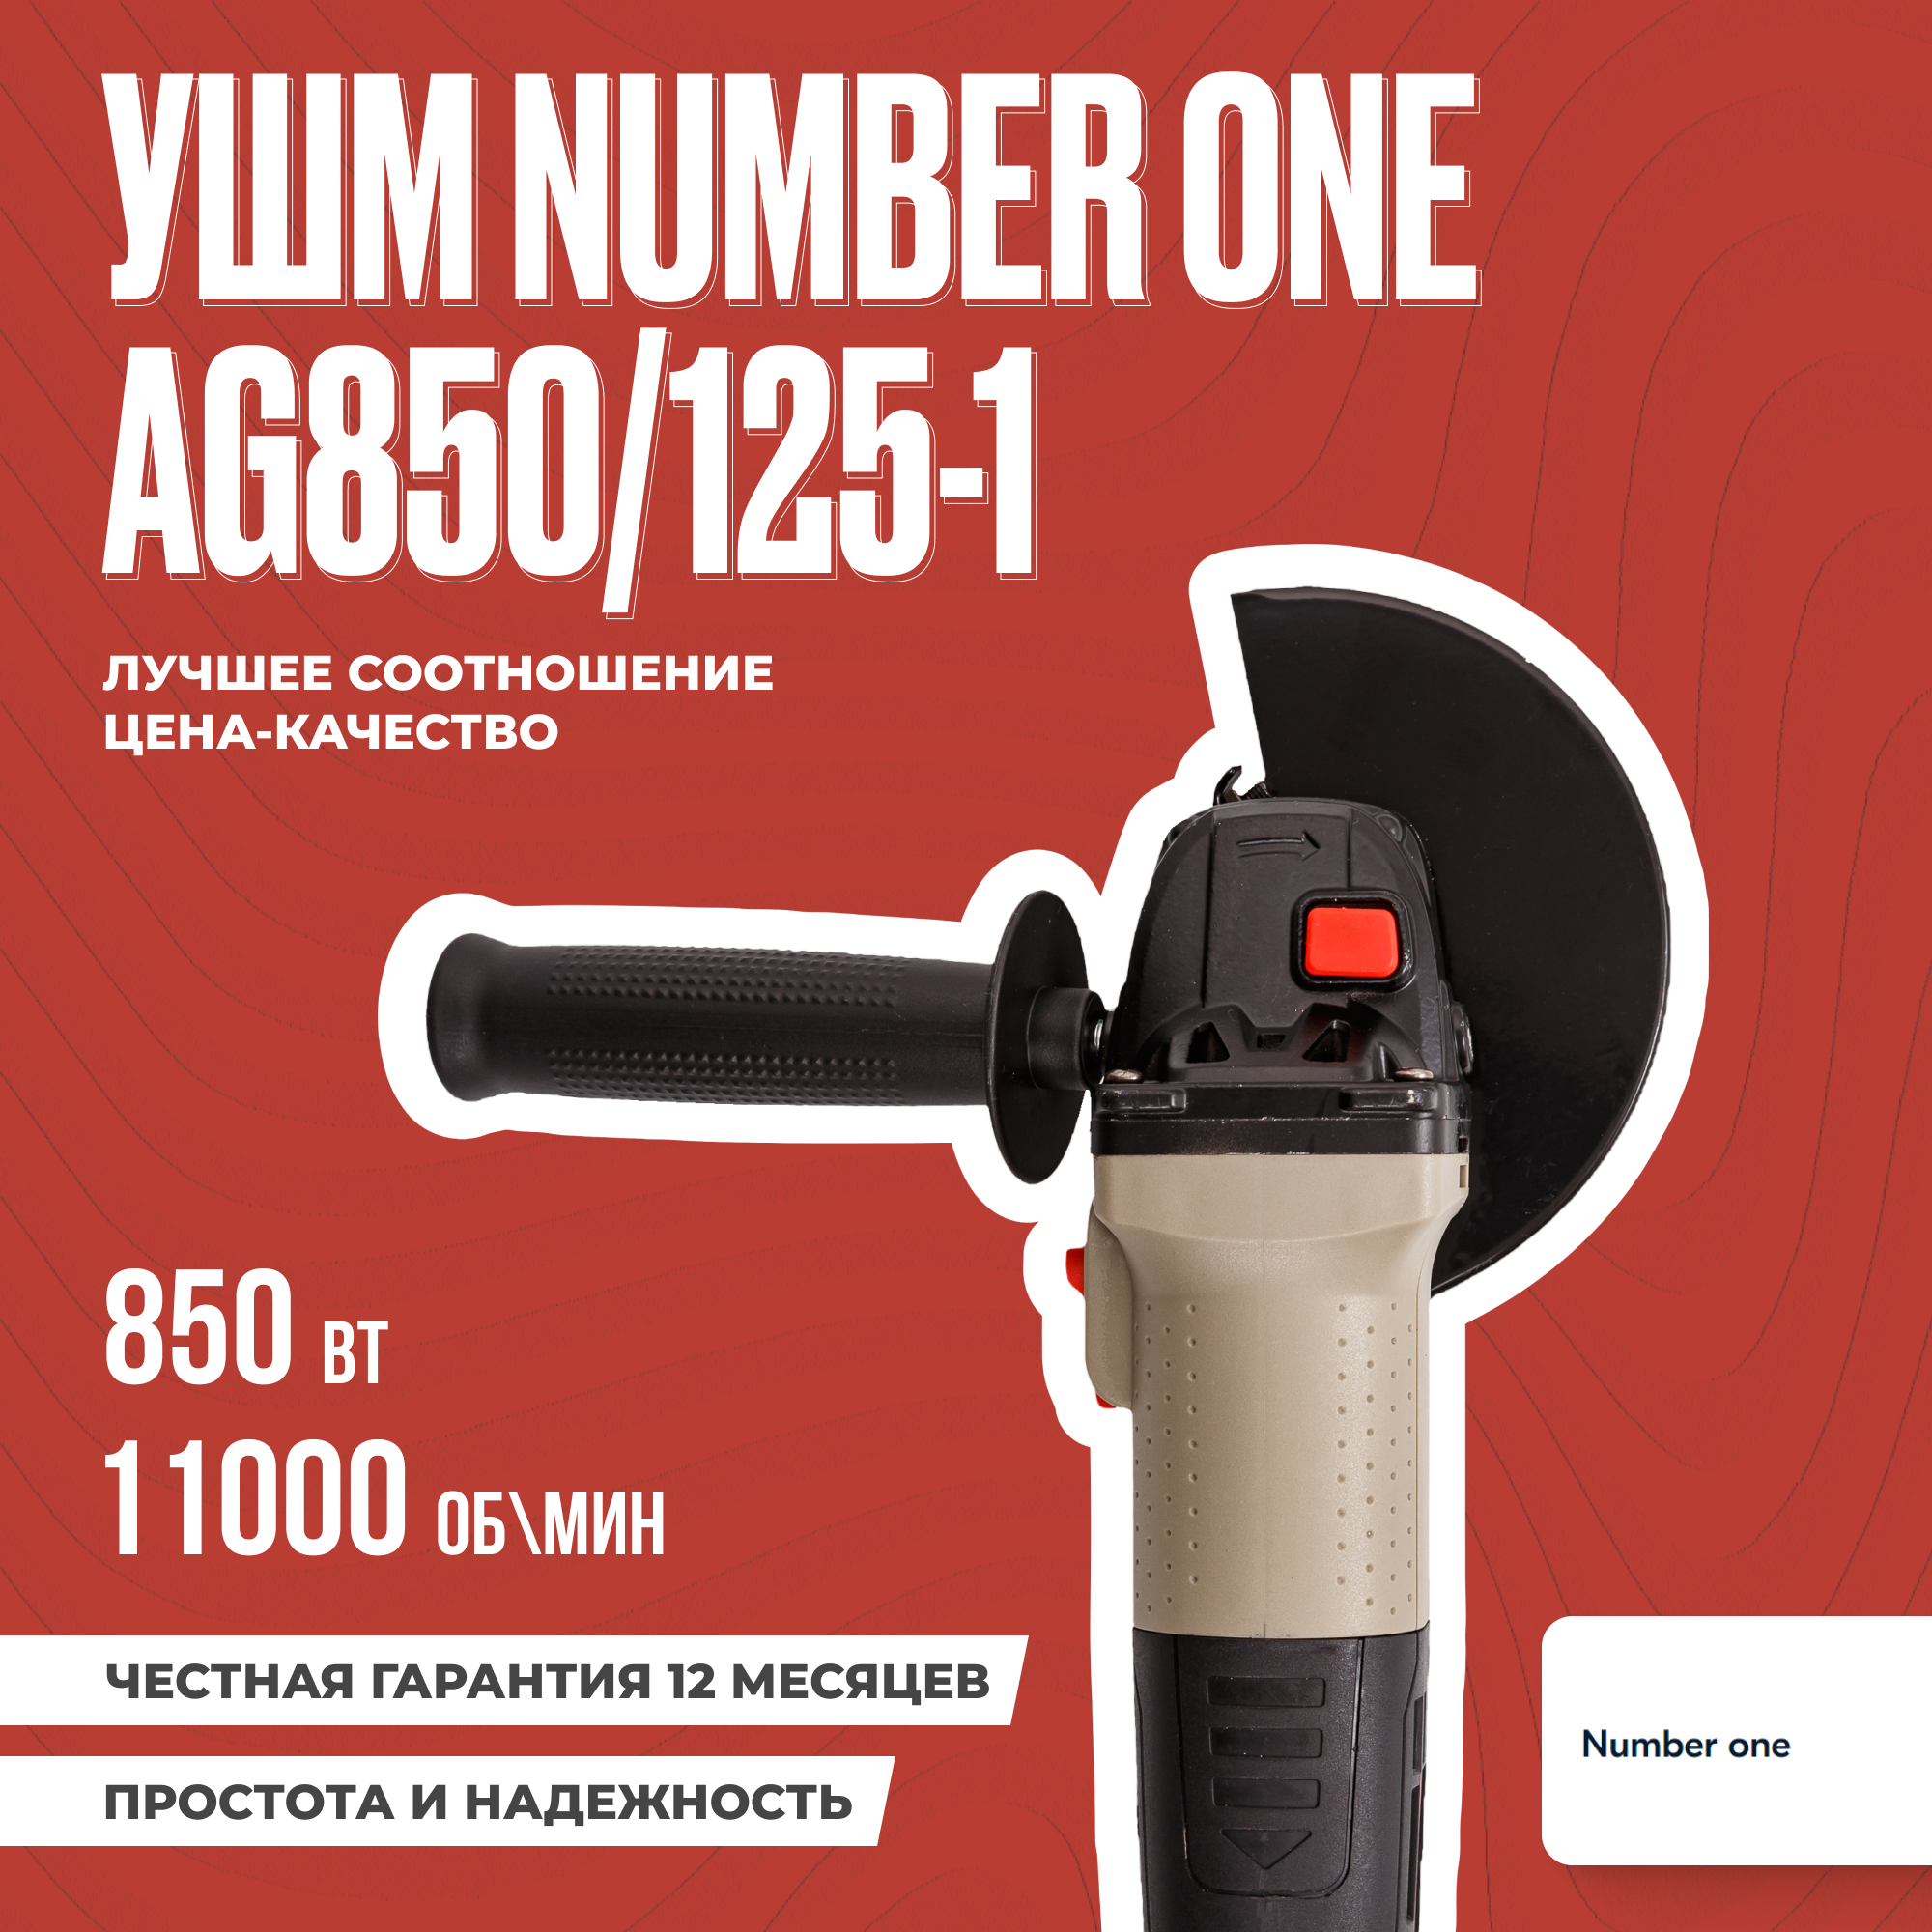 УШМ NUMBER ONE AG850/125-1 125 мм